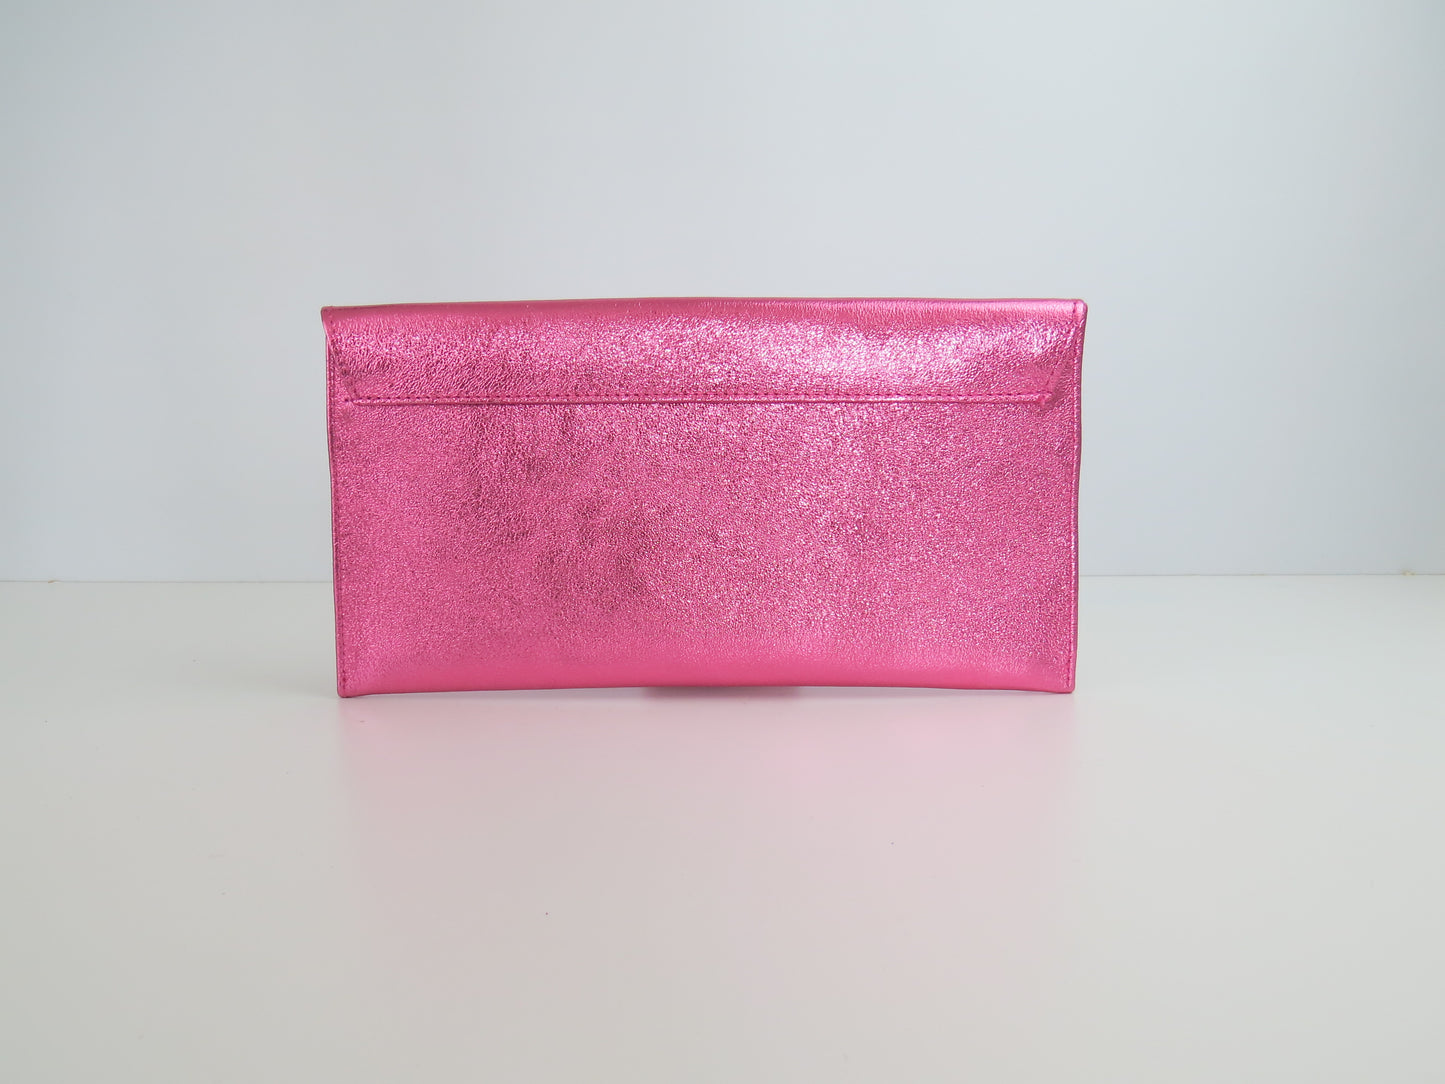 Metallic Pink Rose Envelope Clutch Bag